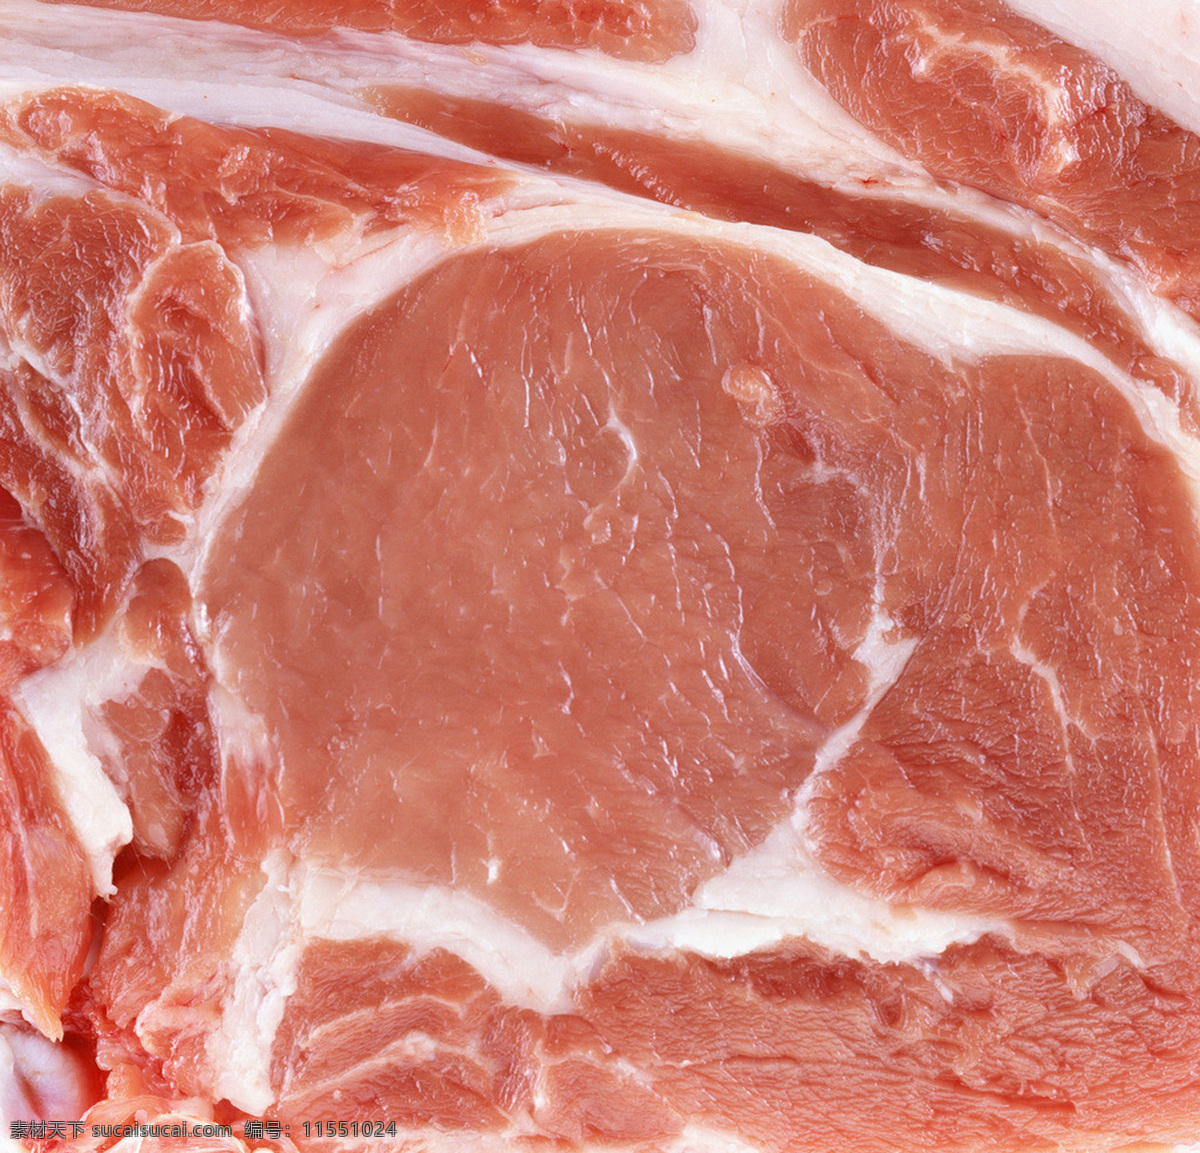 猪肉 肉类 肉 前腿猪肉 猪前腿 肉排 后丘 五花肉 猪五花 生猪肉 美食 餐饮美食 食物原料